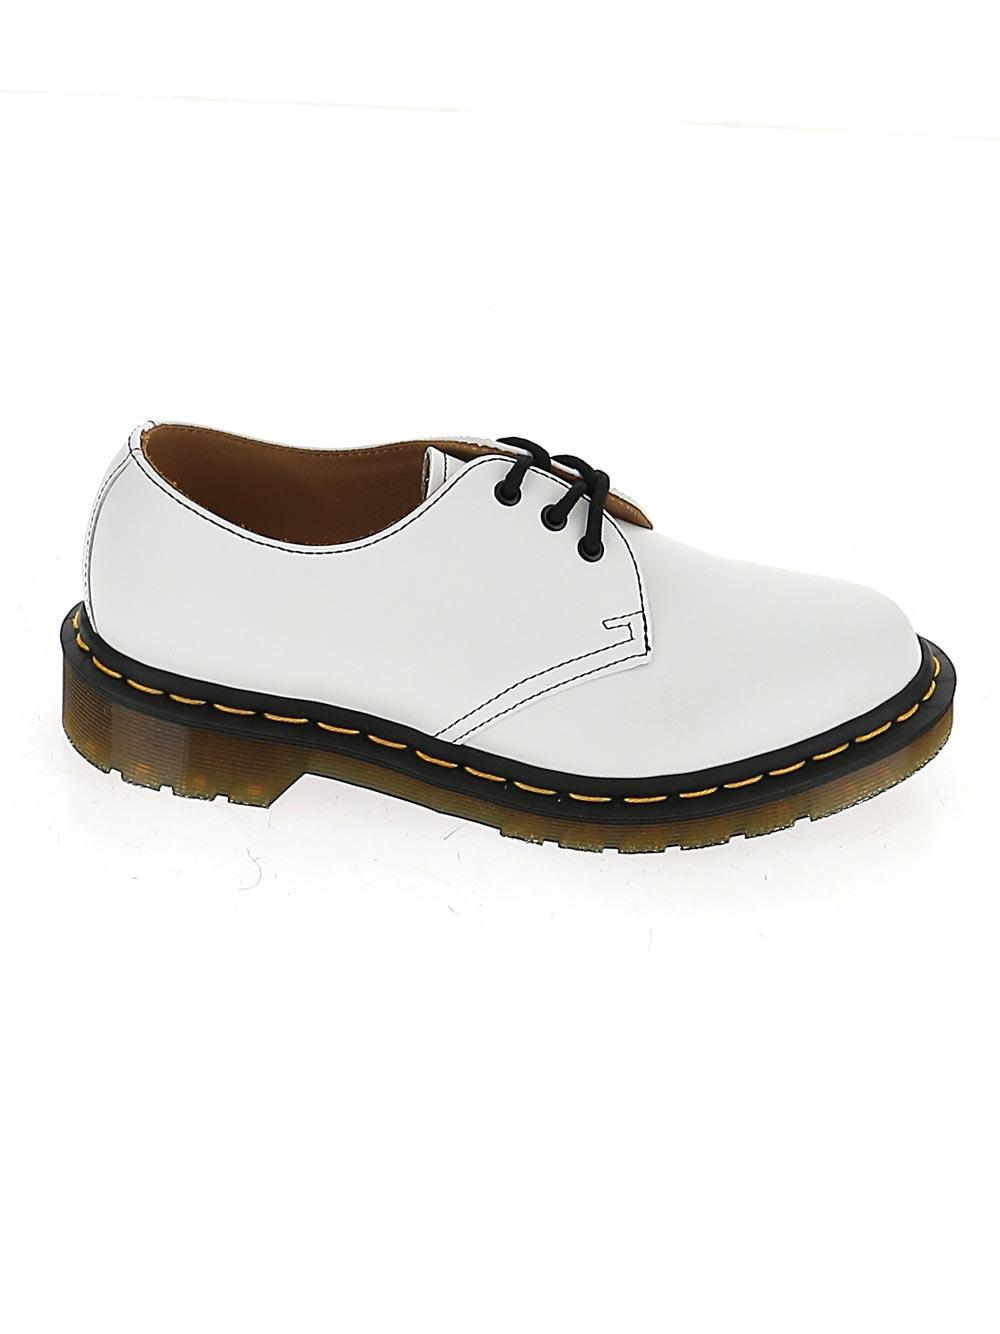 Comme des Garçons Leather X Dr. Martens Derby Shoes in White - Lyst